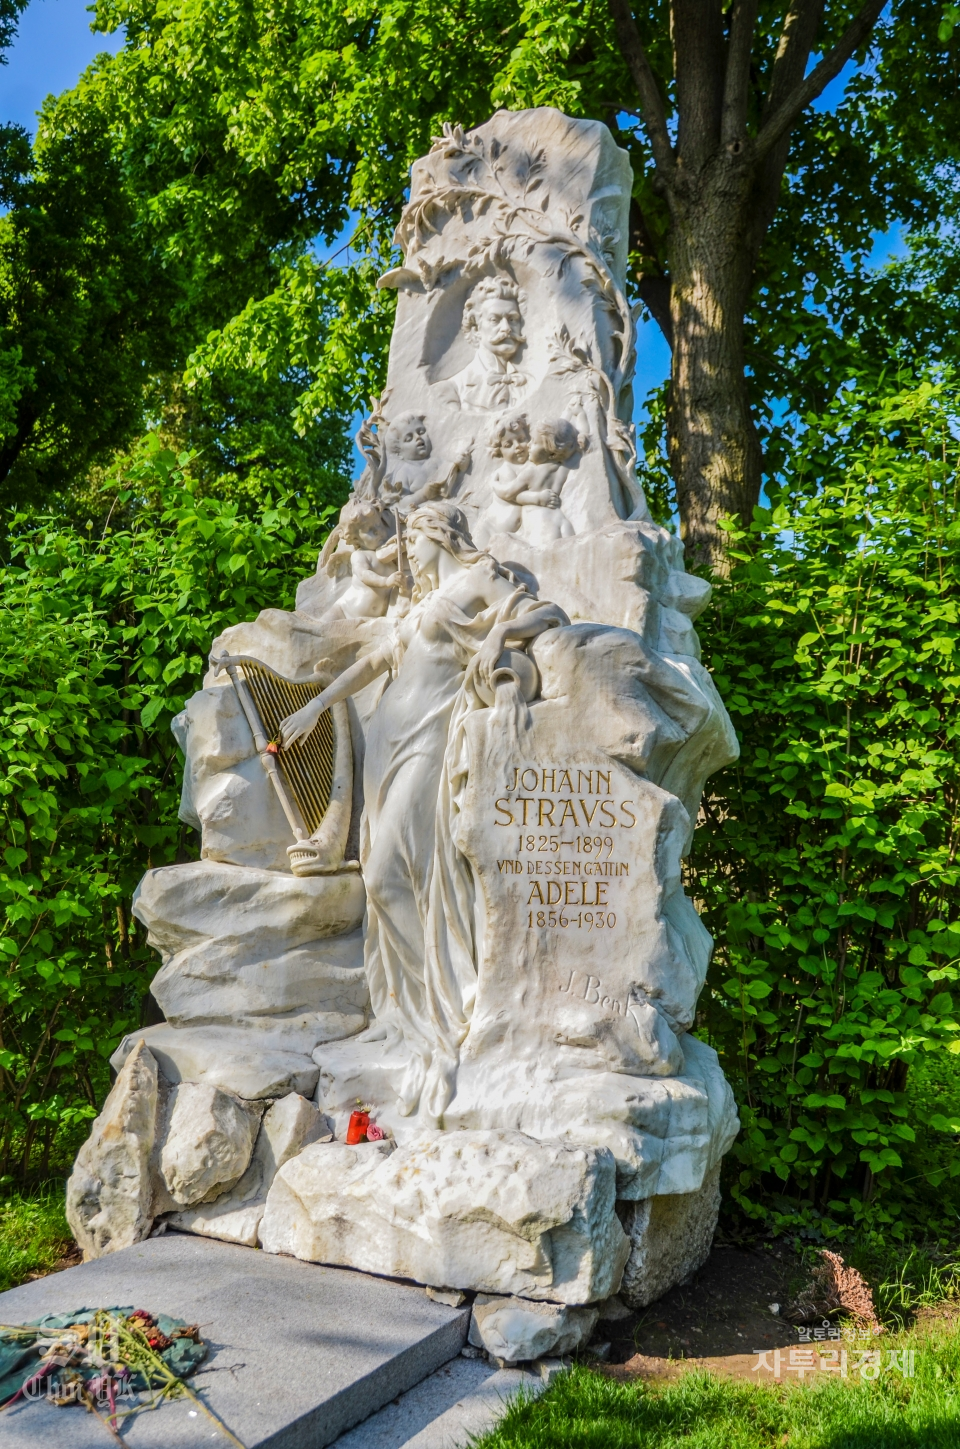 중앙묘지(Wiener Zentralfriedhof)에 잠들어 있는 요한 슈트라우스 2세(Johann Strauß II)의 묘비석. 이곳에는 세계적으로 유명한 음악가들이 잠들어 있다. Photo by 최영규